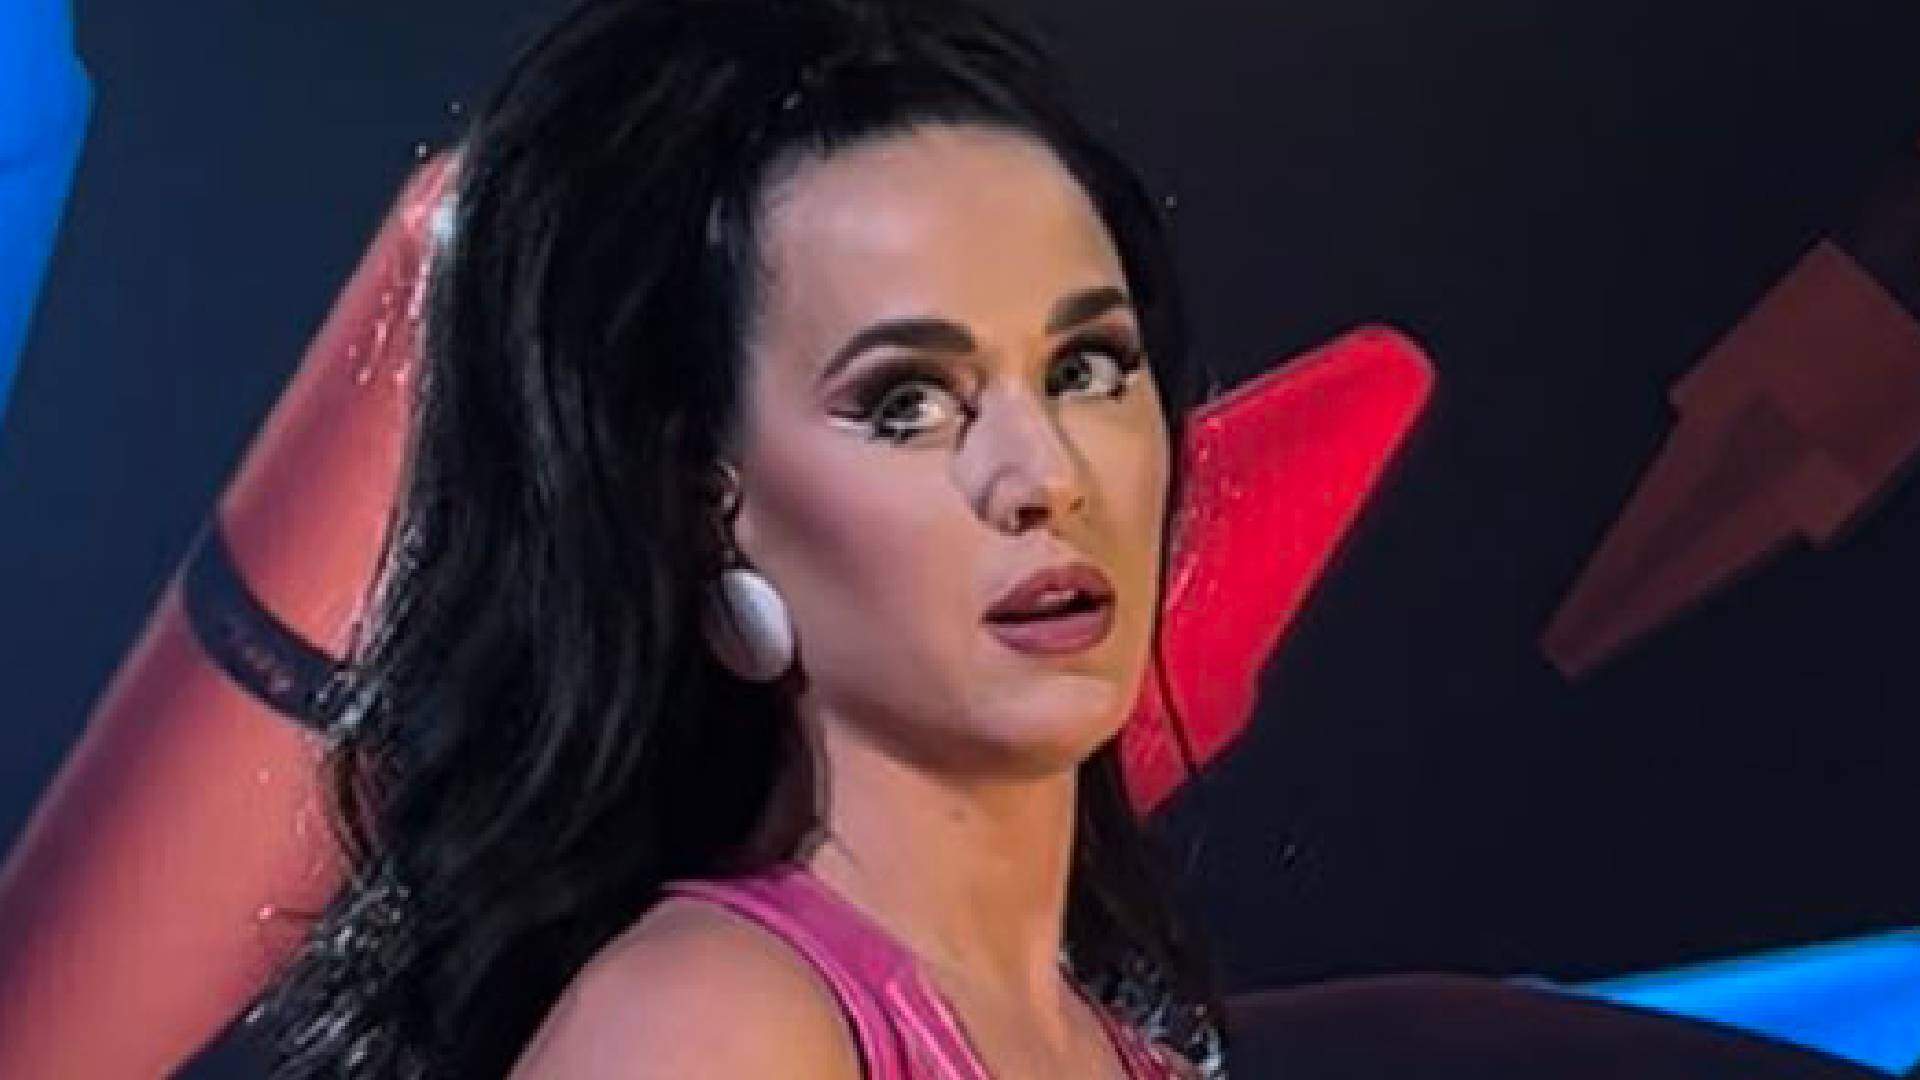 O que aconteceu com Katy Perry? Cantora passa por perrengue inusitado durante show e preocupa fãs